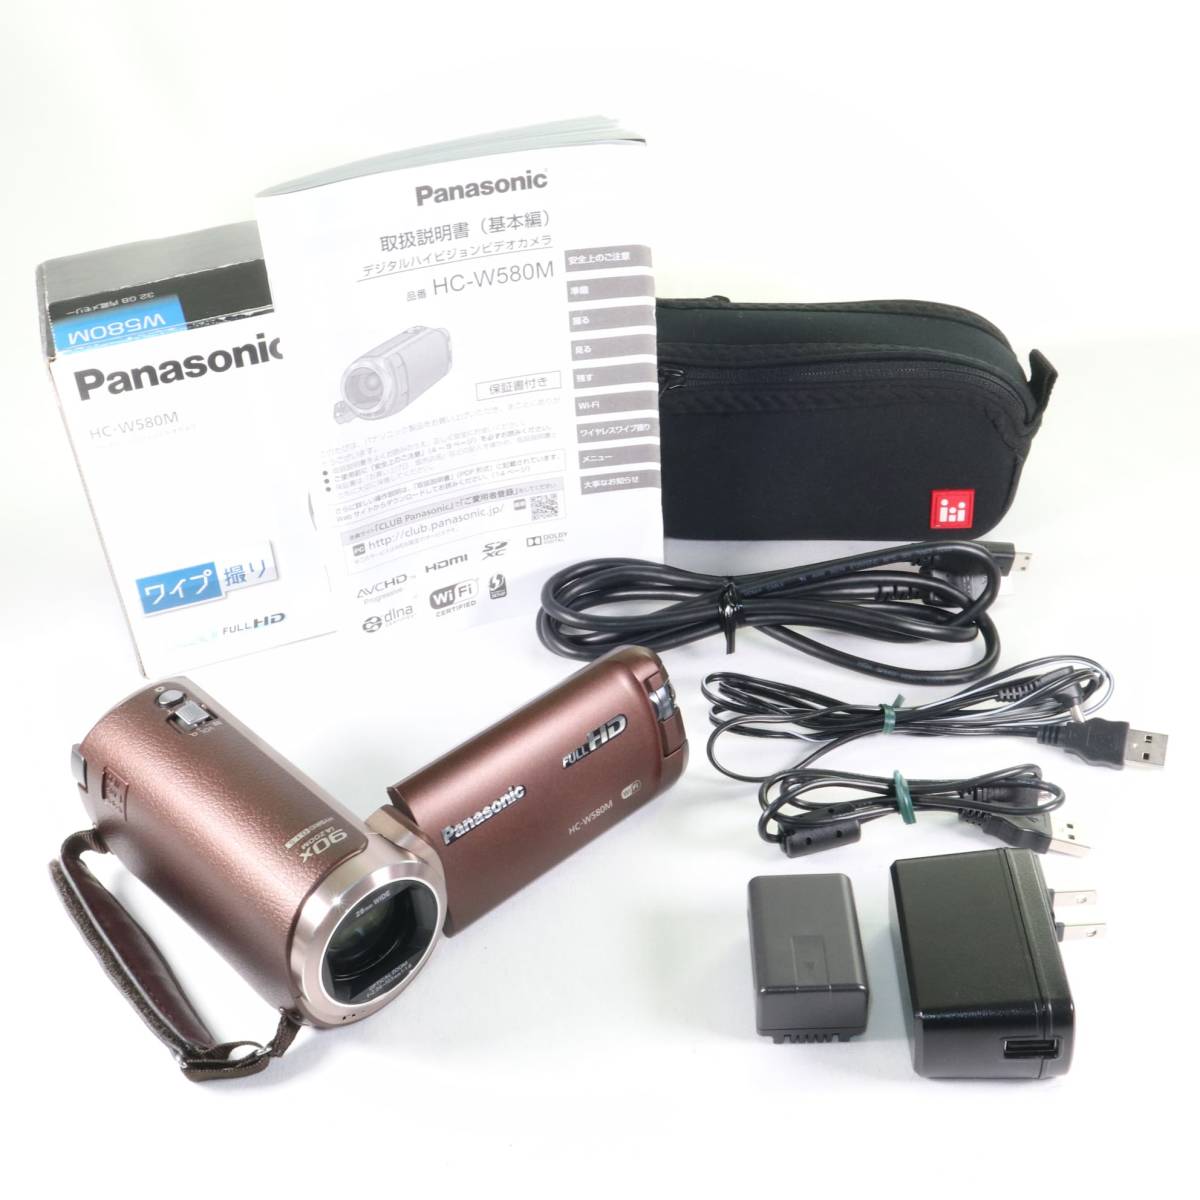 安価 《極上美品》Panasonic HC-W580M ブラウン パナソニック ビデオカメラ k2119